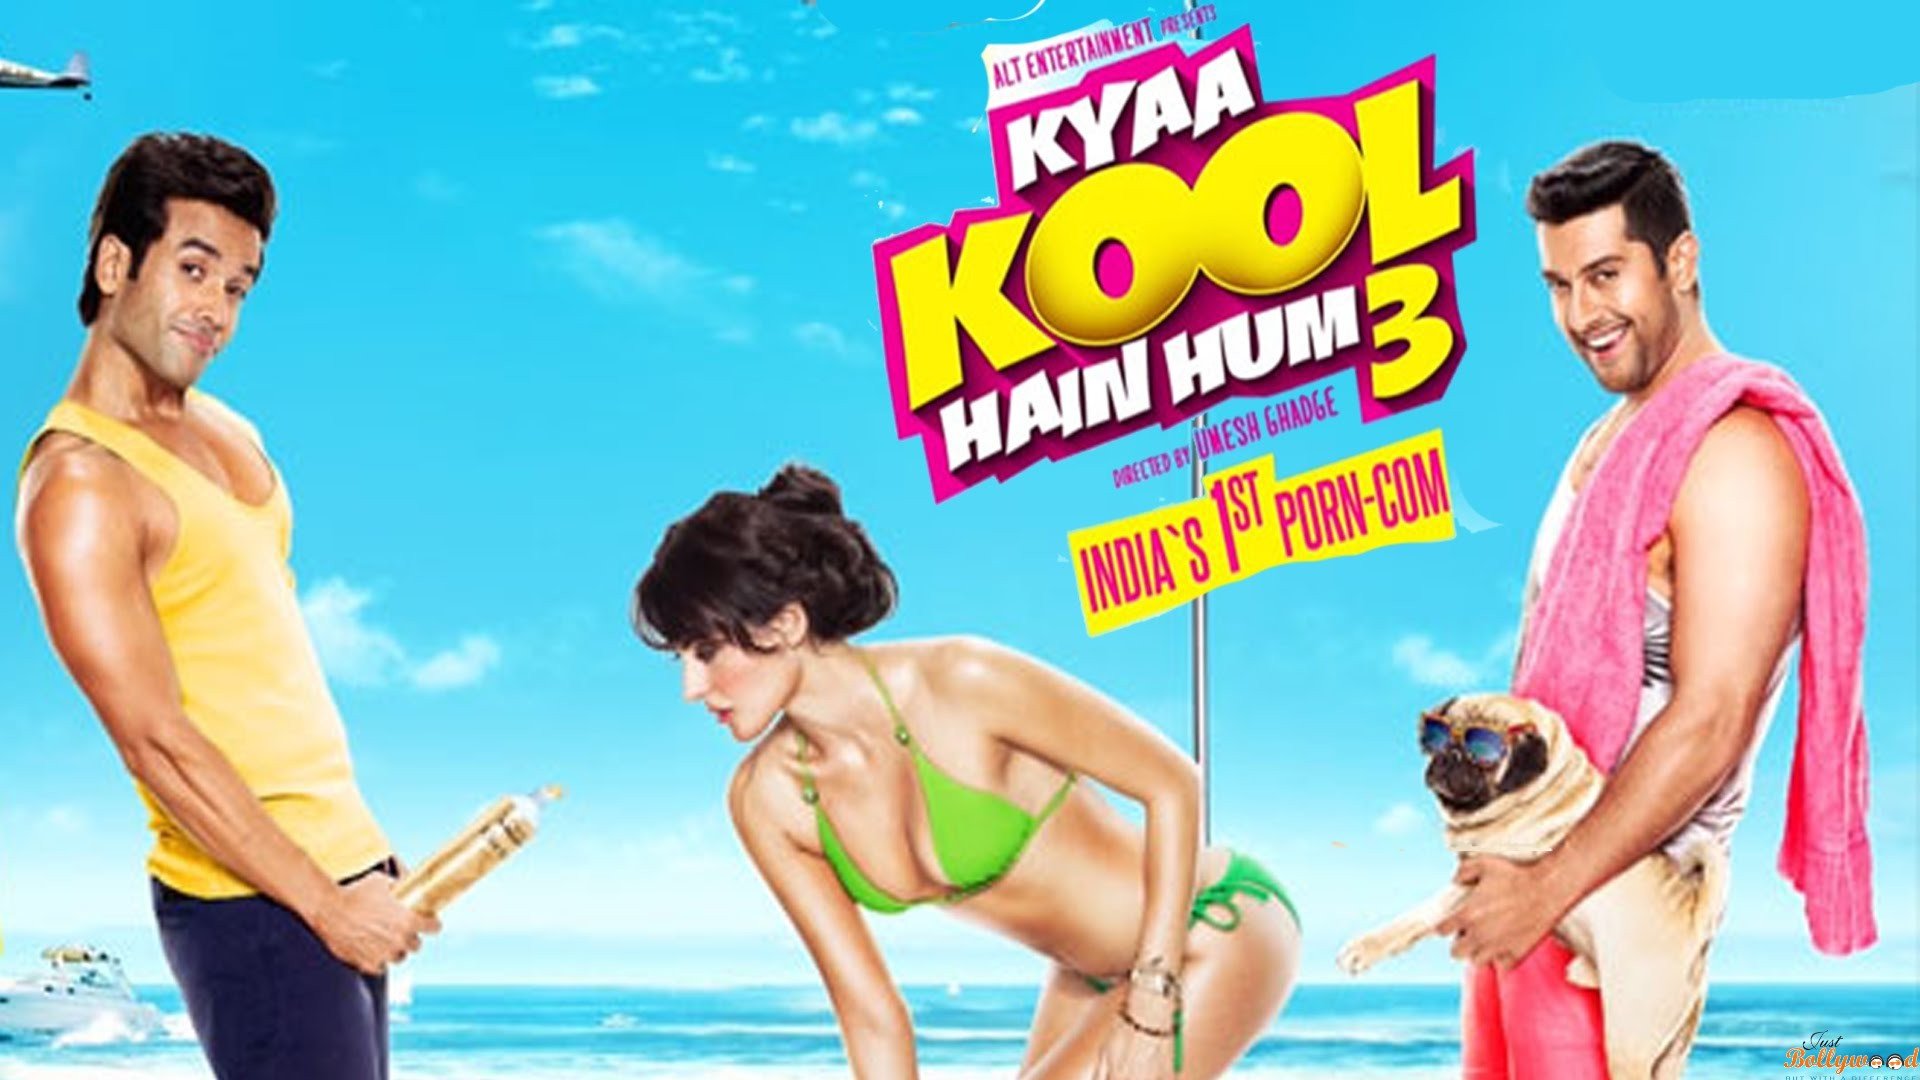 Kya Kool hai hum 3 trailer